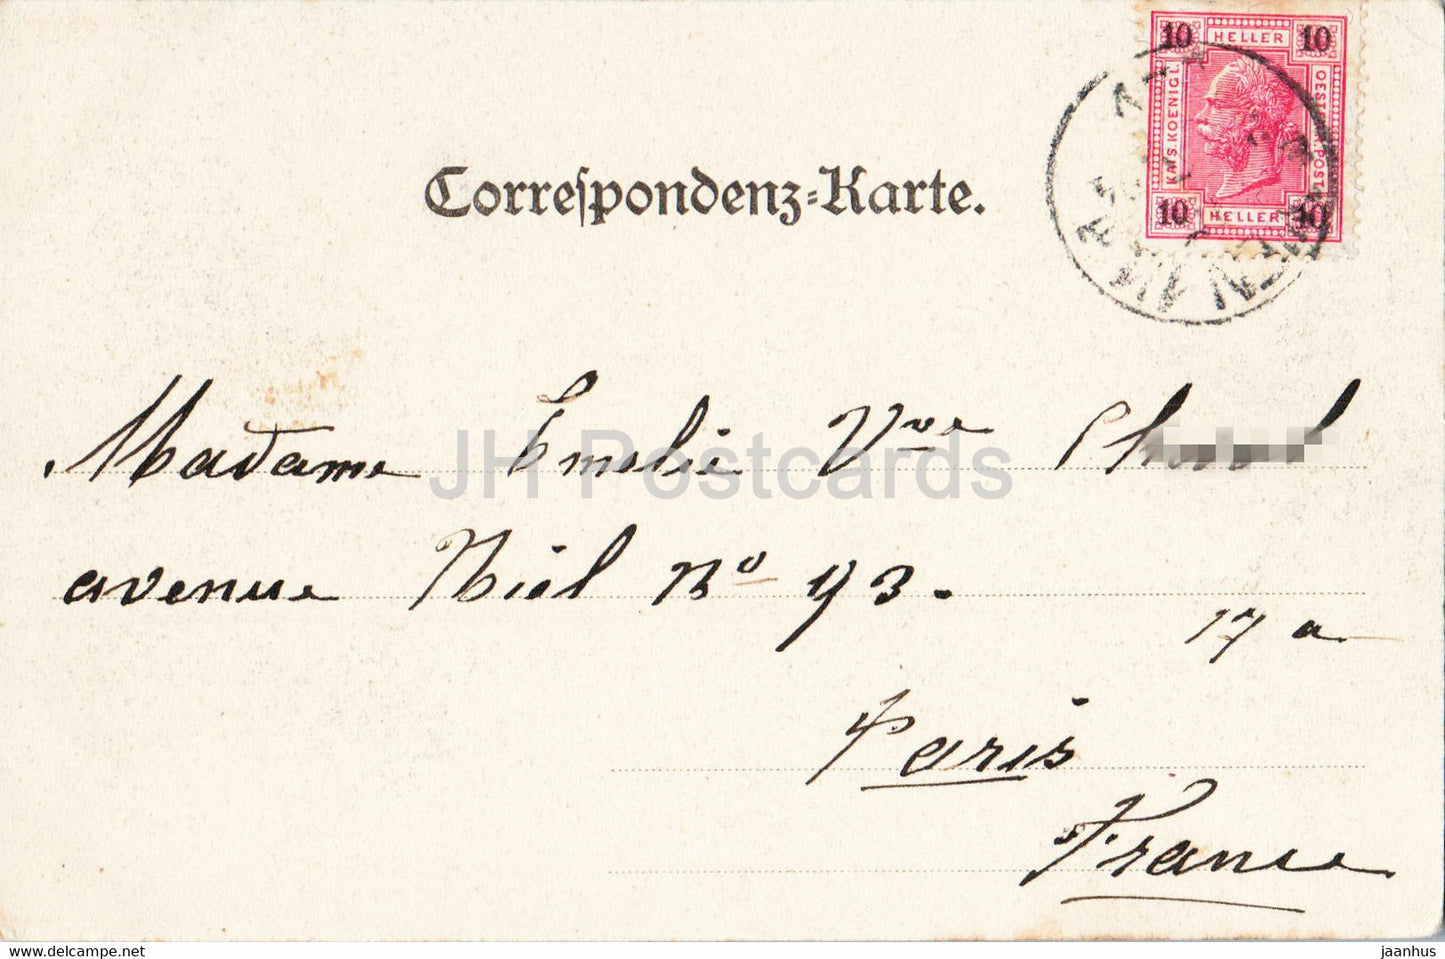 Wien - Vienne - Freyung mit Schotten Pfarrkirche - Heidenschuss - 175 - carte postale ancienne - 1910 - Autriche - utilisé